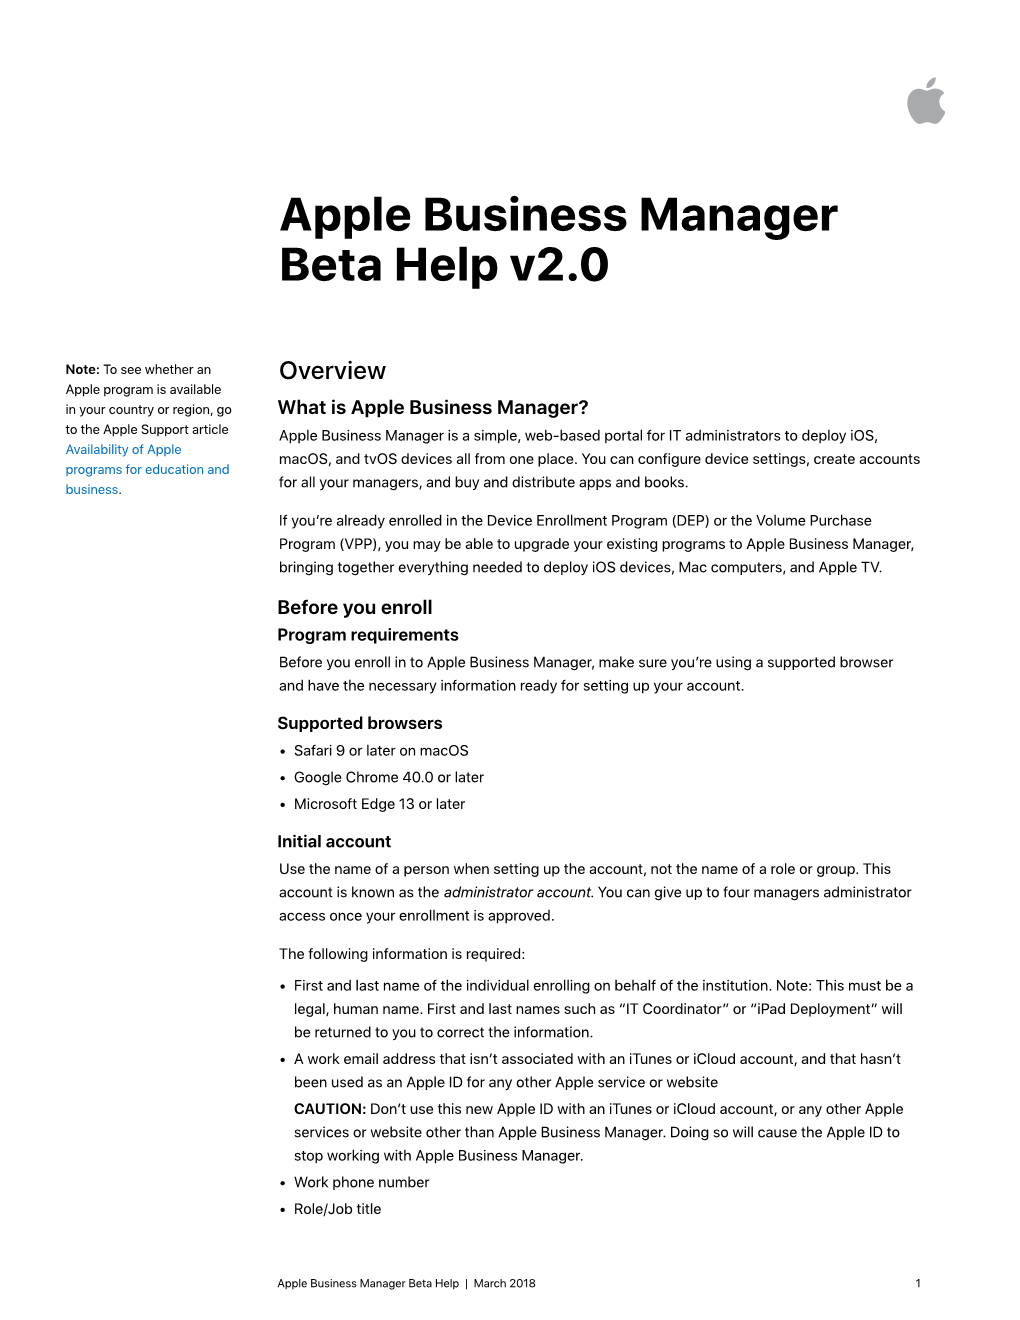 Apple Business Manager Beta Help V2.0